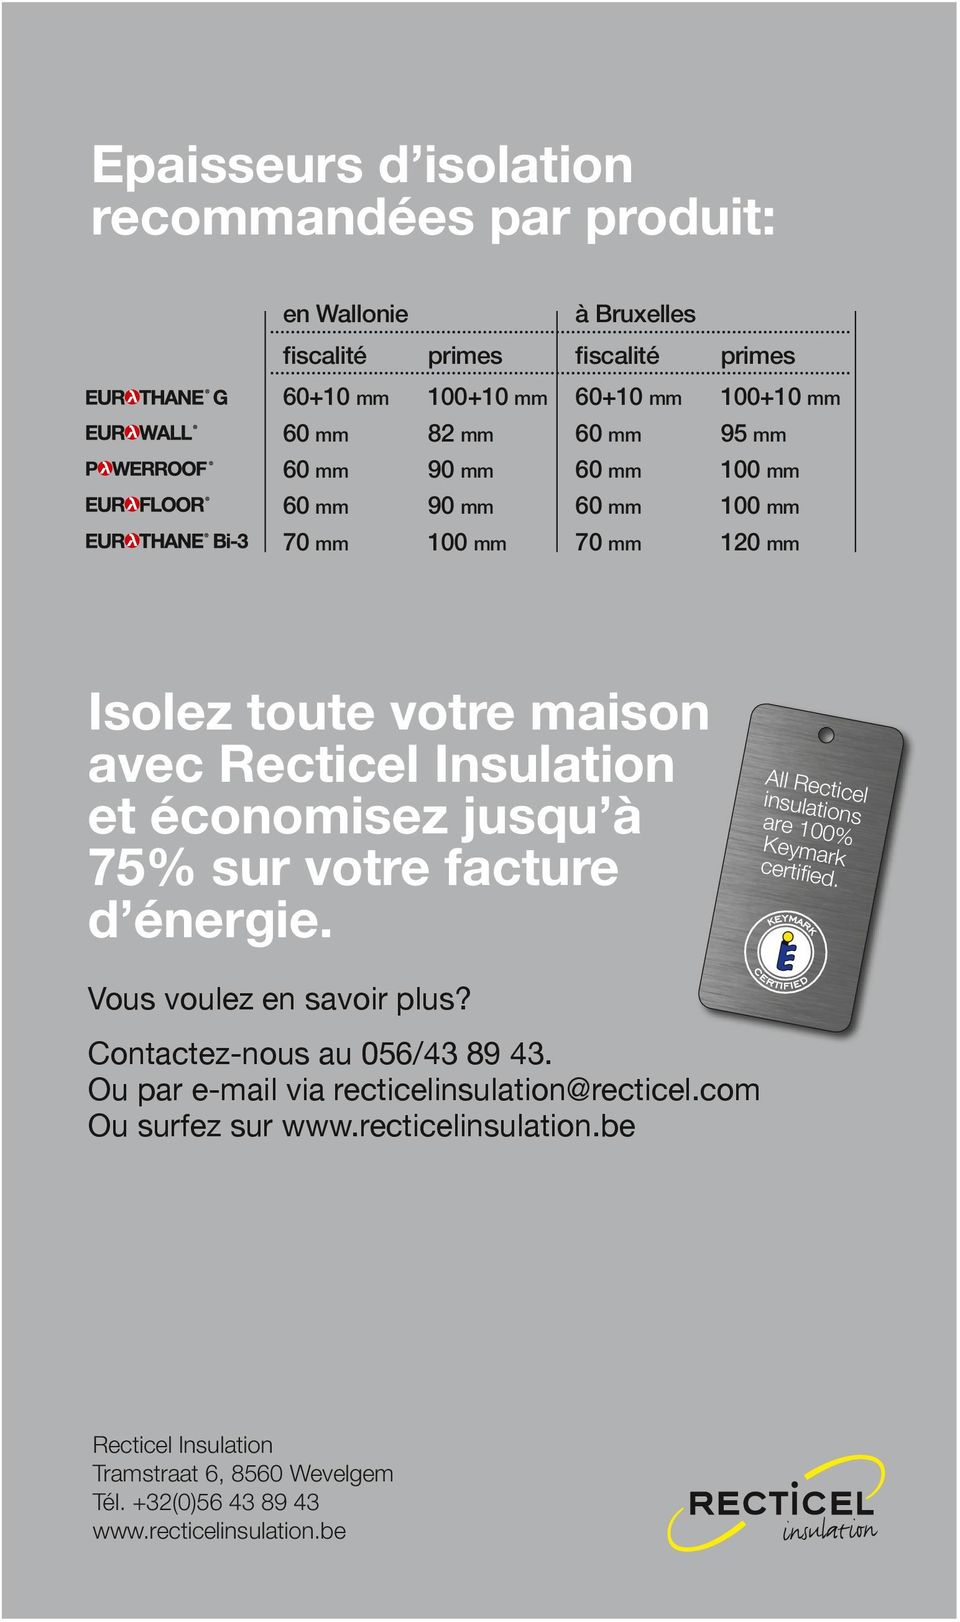 votre facture d énergie. All Recticel insulations are 100% Keymark certified. Vous voulez en savoir plus? Contactez-nous au 056/43 89 43.